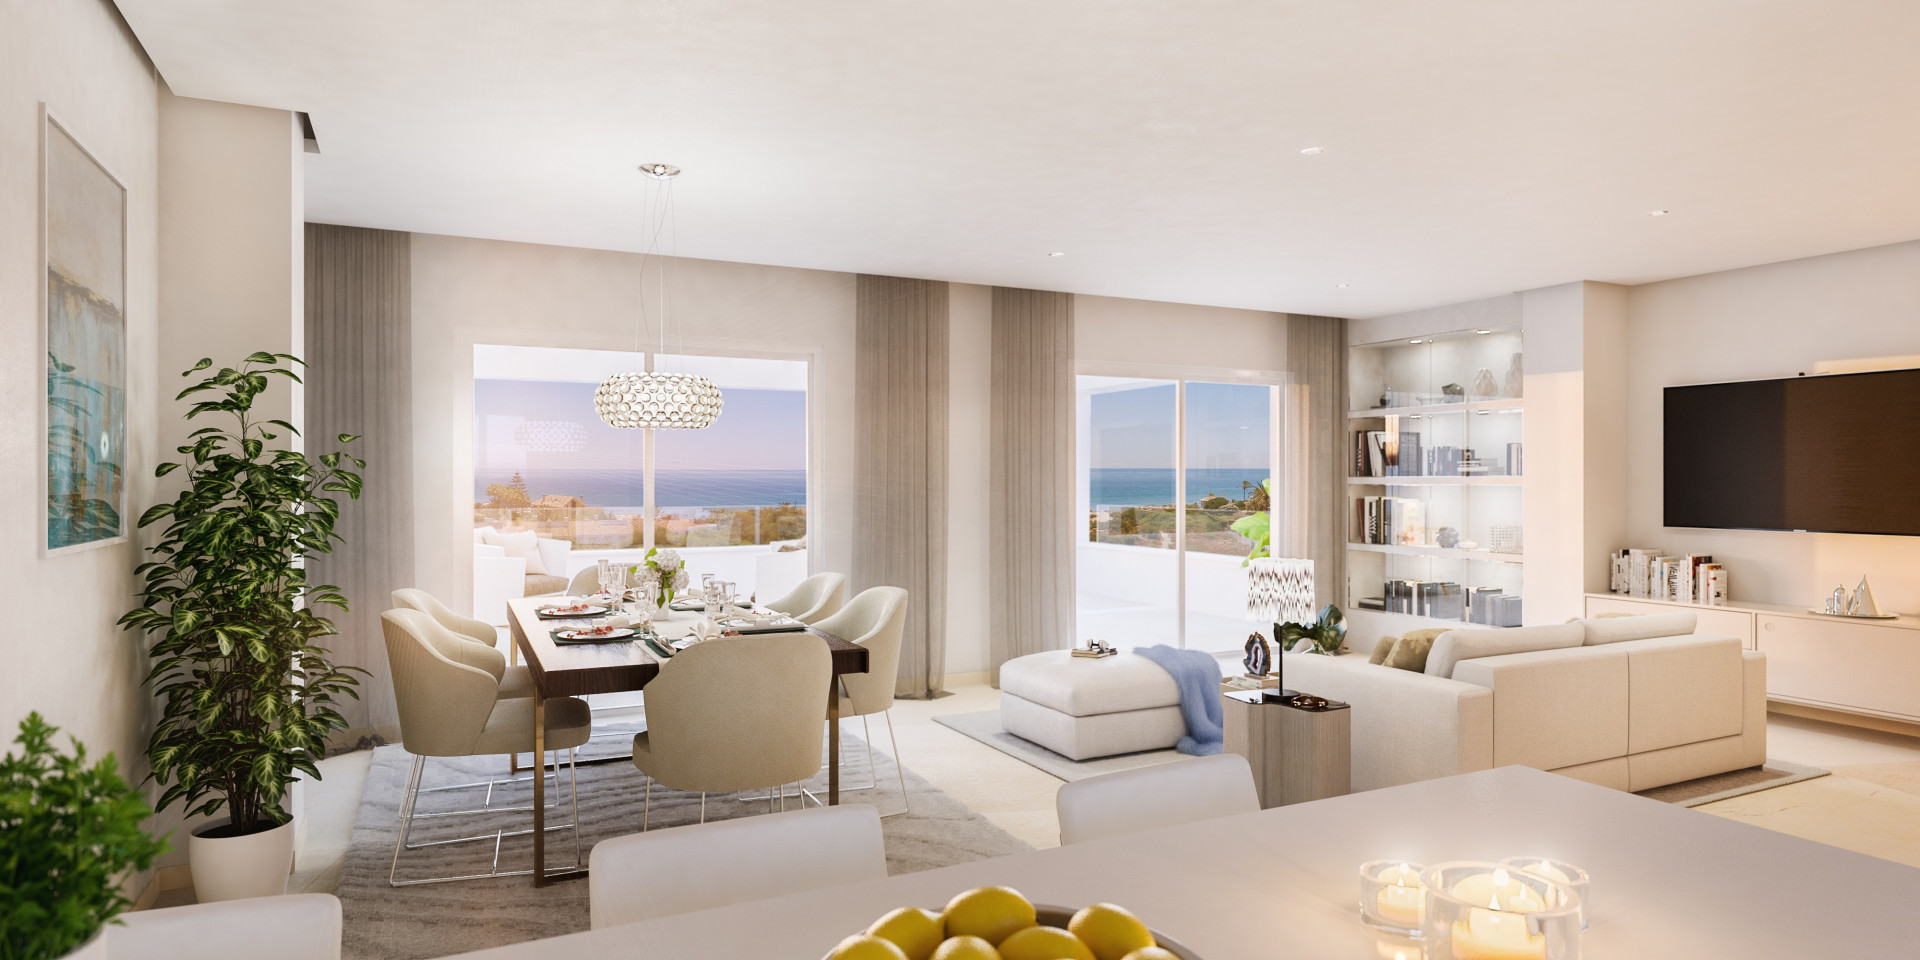 Newly built modern apartments for sale in Altos de los Monteros - Marbella